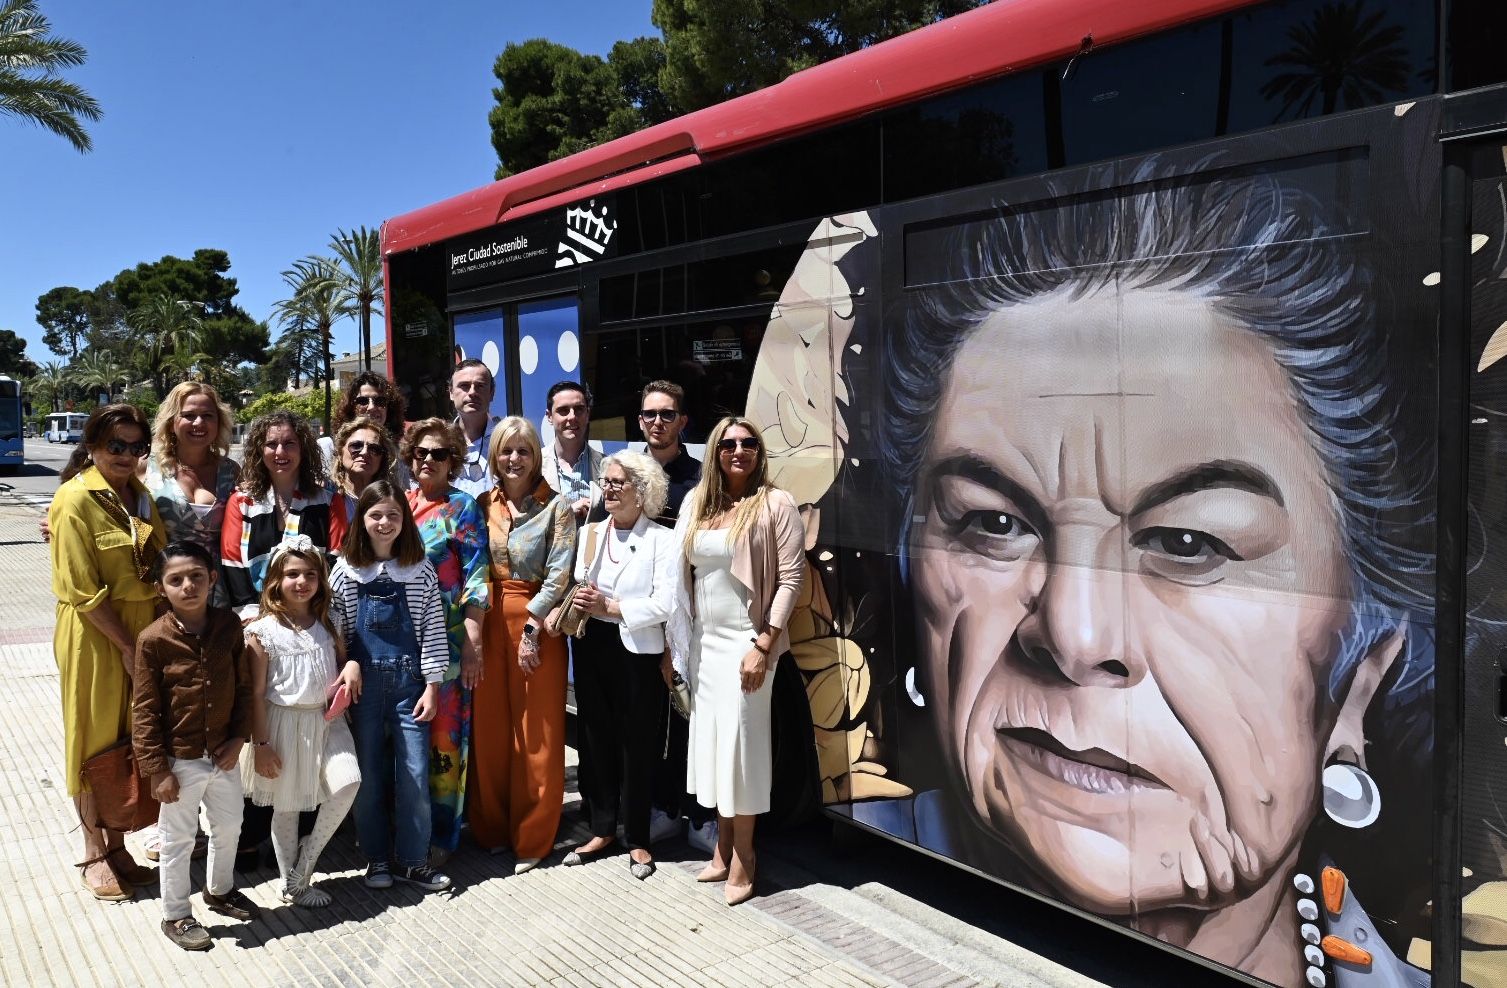 La alcaldesa, familia de La Paquera y el autor del mural, Fran Castro, Cosa V., en días pasados ante la portada de la Feria de Jerez y junto al autobús de La Paquera.